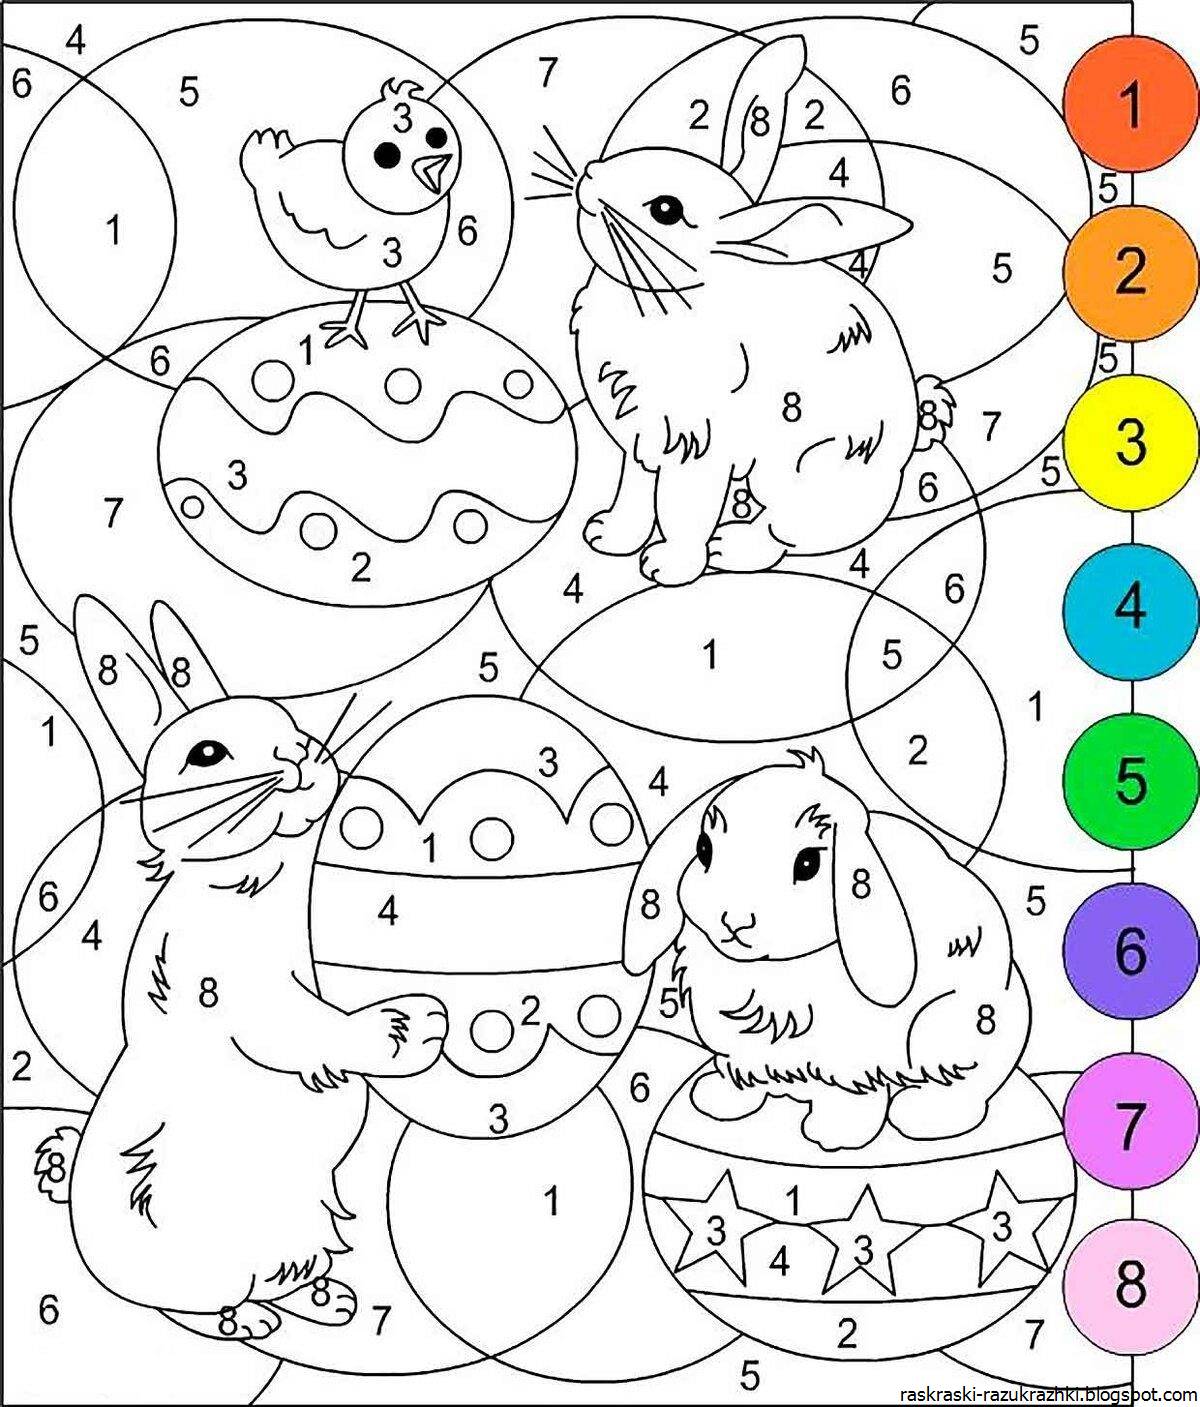 Радостная раскраска по номерам для детей 5-6 лет